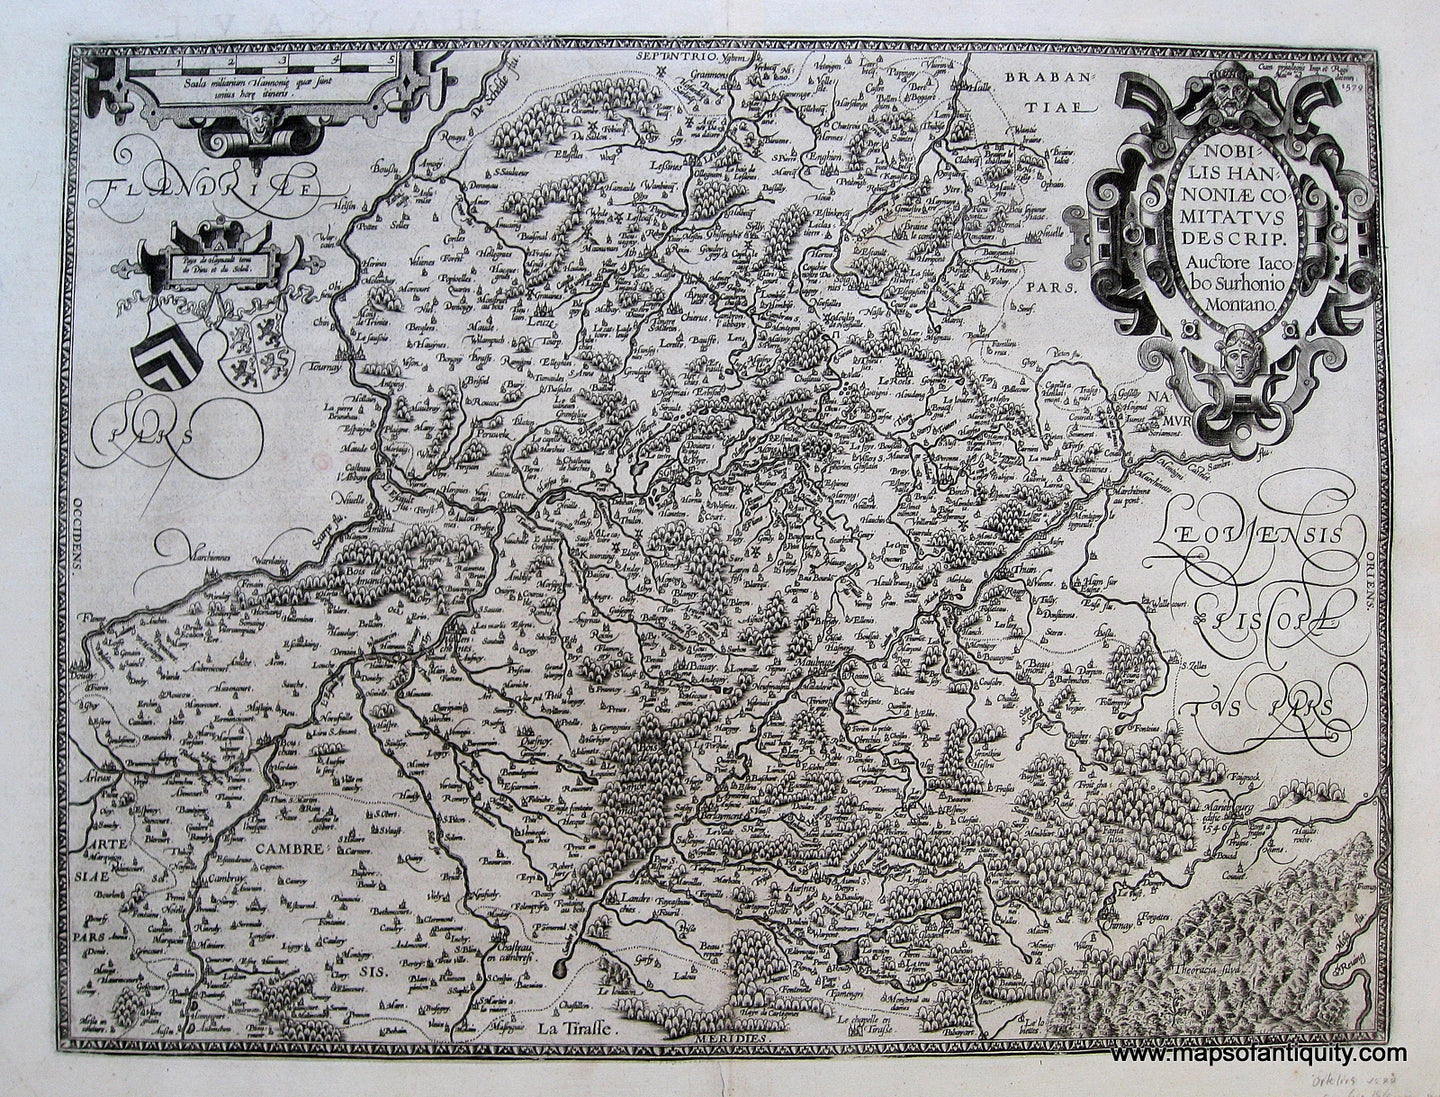 Antique-Black-and-White-Engraved-Map-Nobilis-Hannoniae-Comitatus-Belgium-**ON-HOLD**-Belgium--1579-Ortelius-Maps-Of-Antiquity